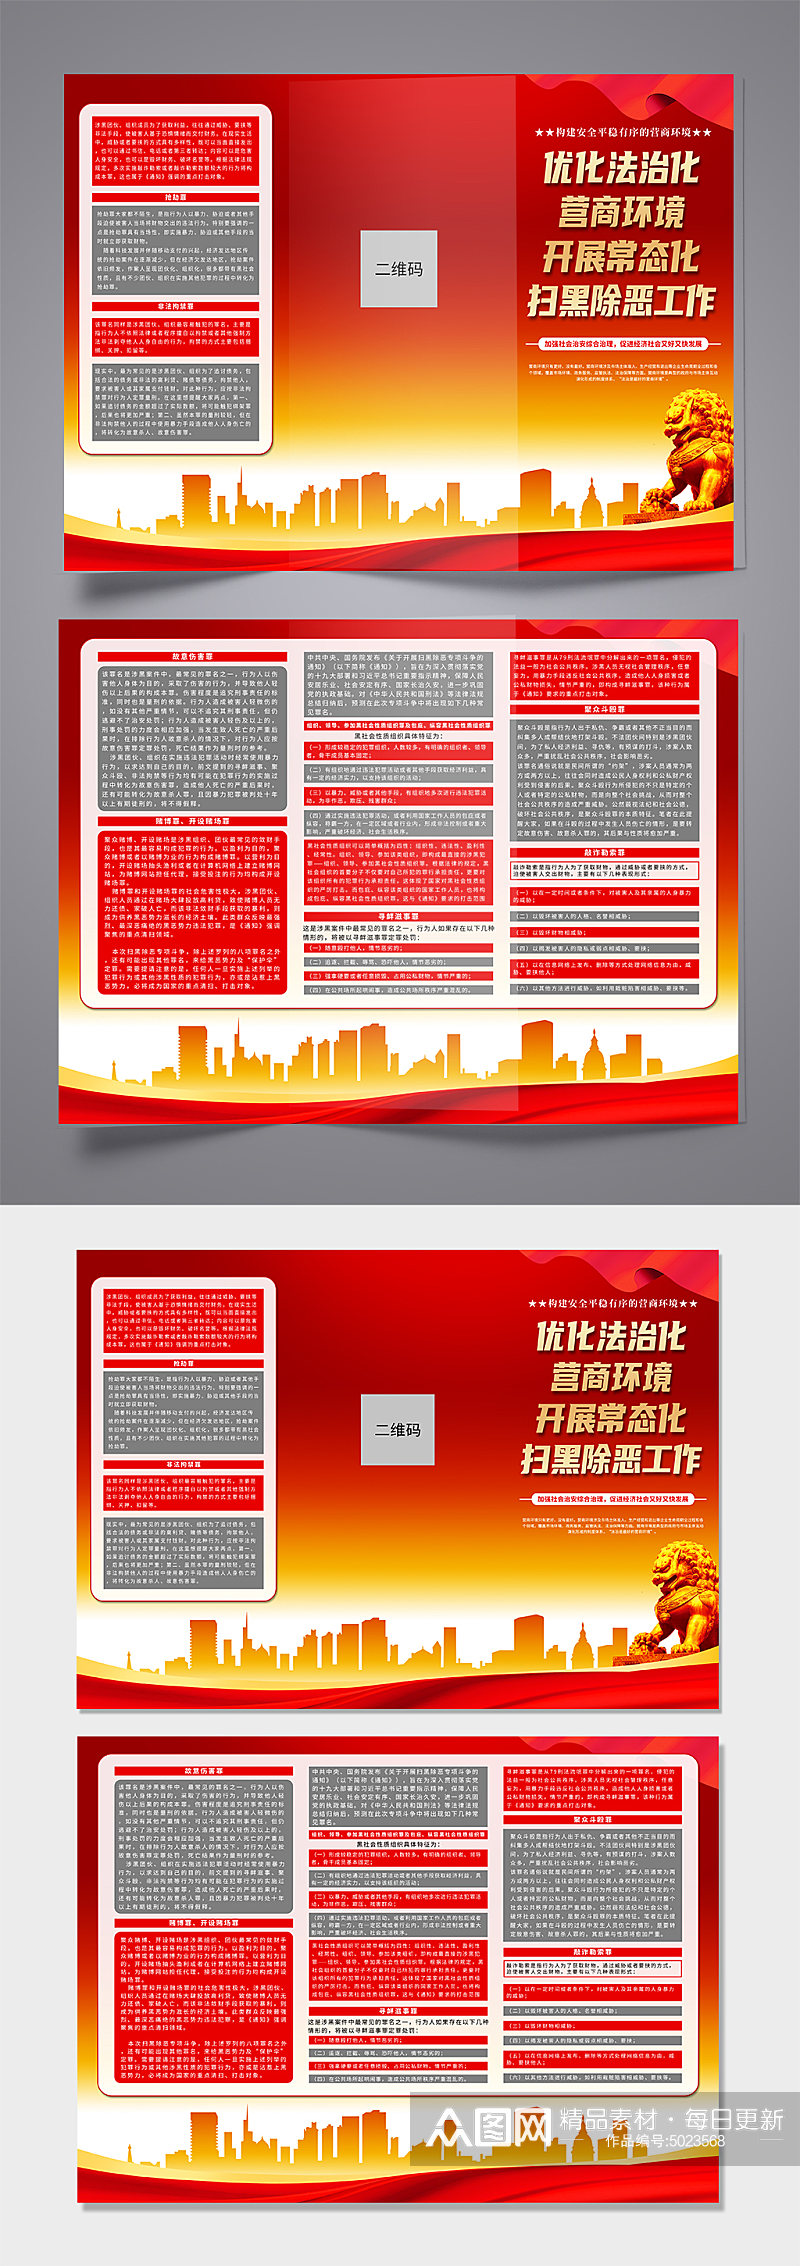 红色优化法治化营商环境党建折页素材